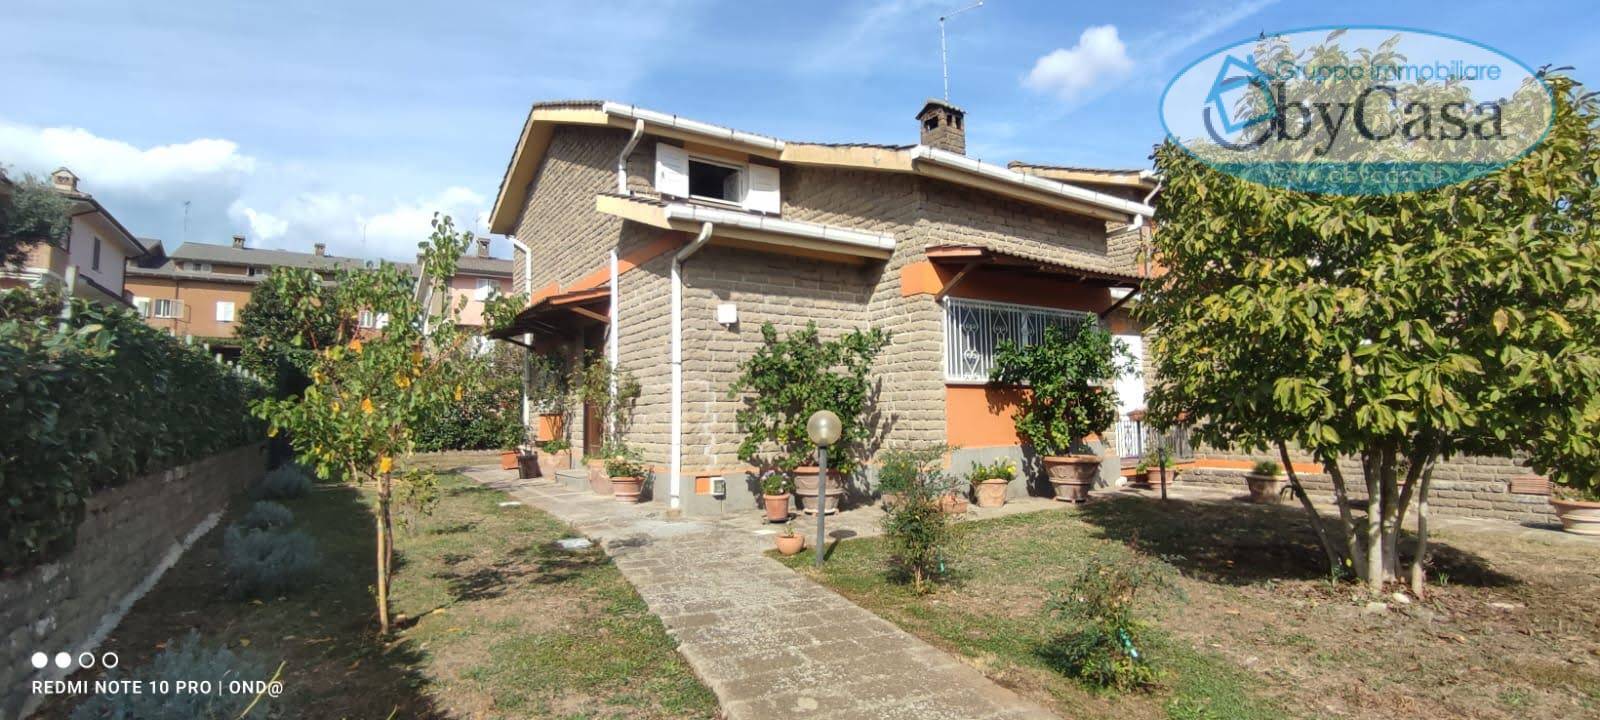 Villa Bifamiliare in vendita a Manziana, 3 locali, zona Località: pratidelponte, prezzo € 210.000 | PortaleAgenzieImmobiliari.it